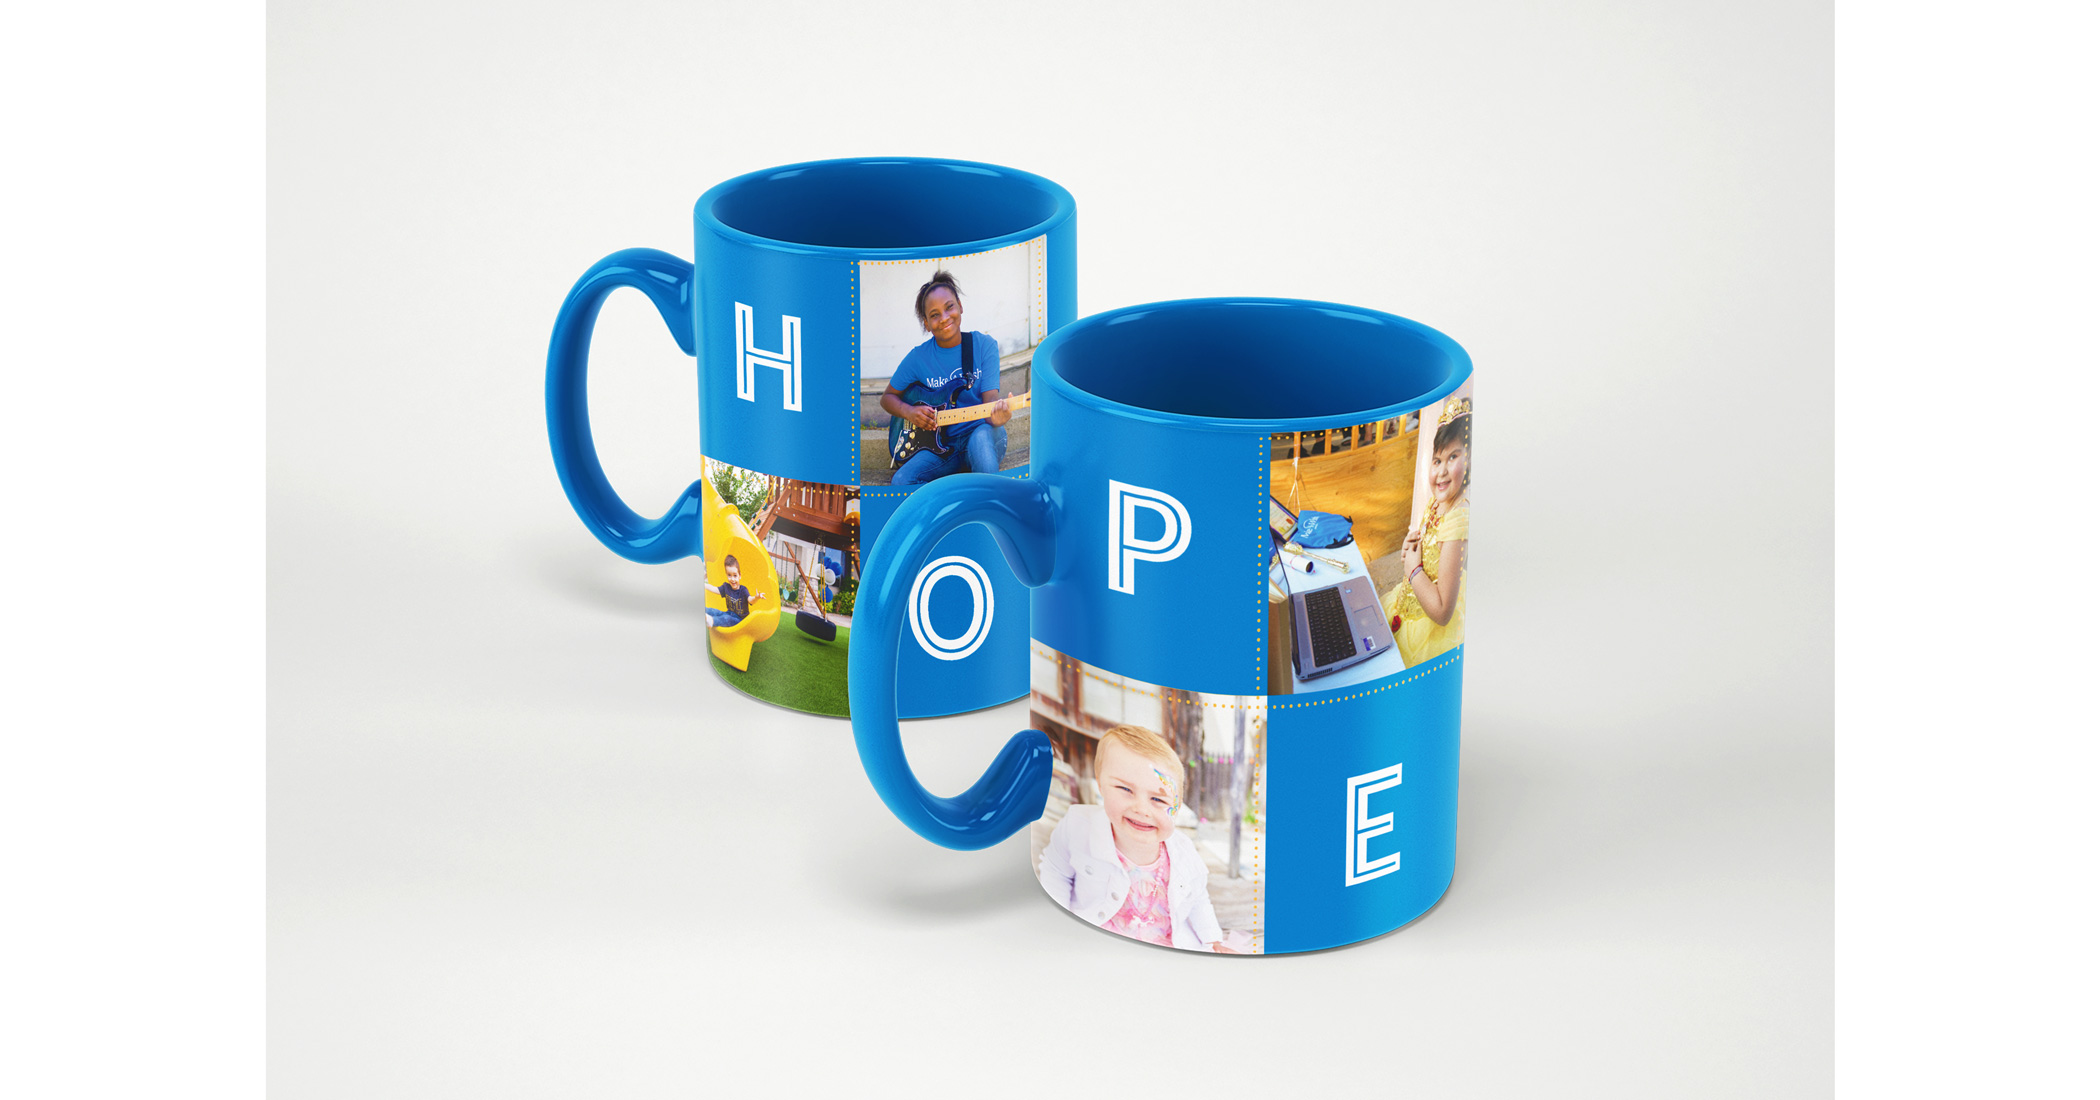 Hope Mug